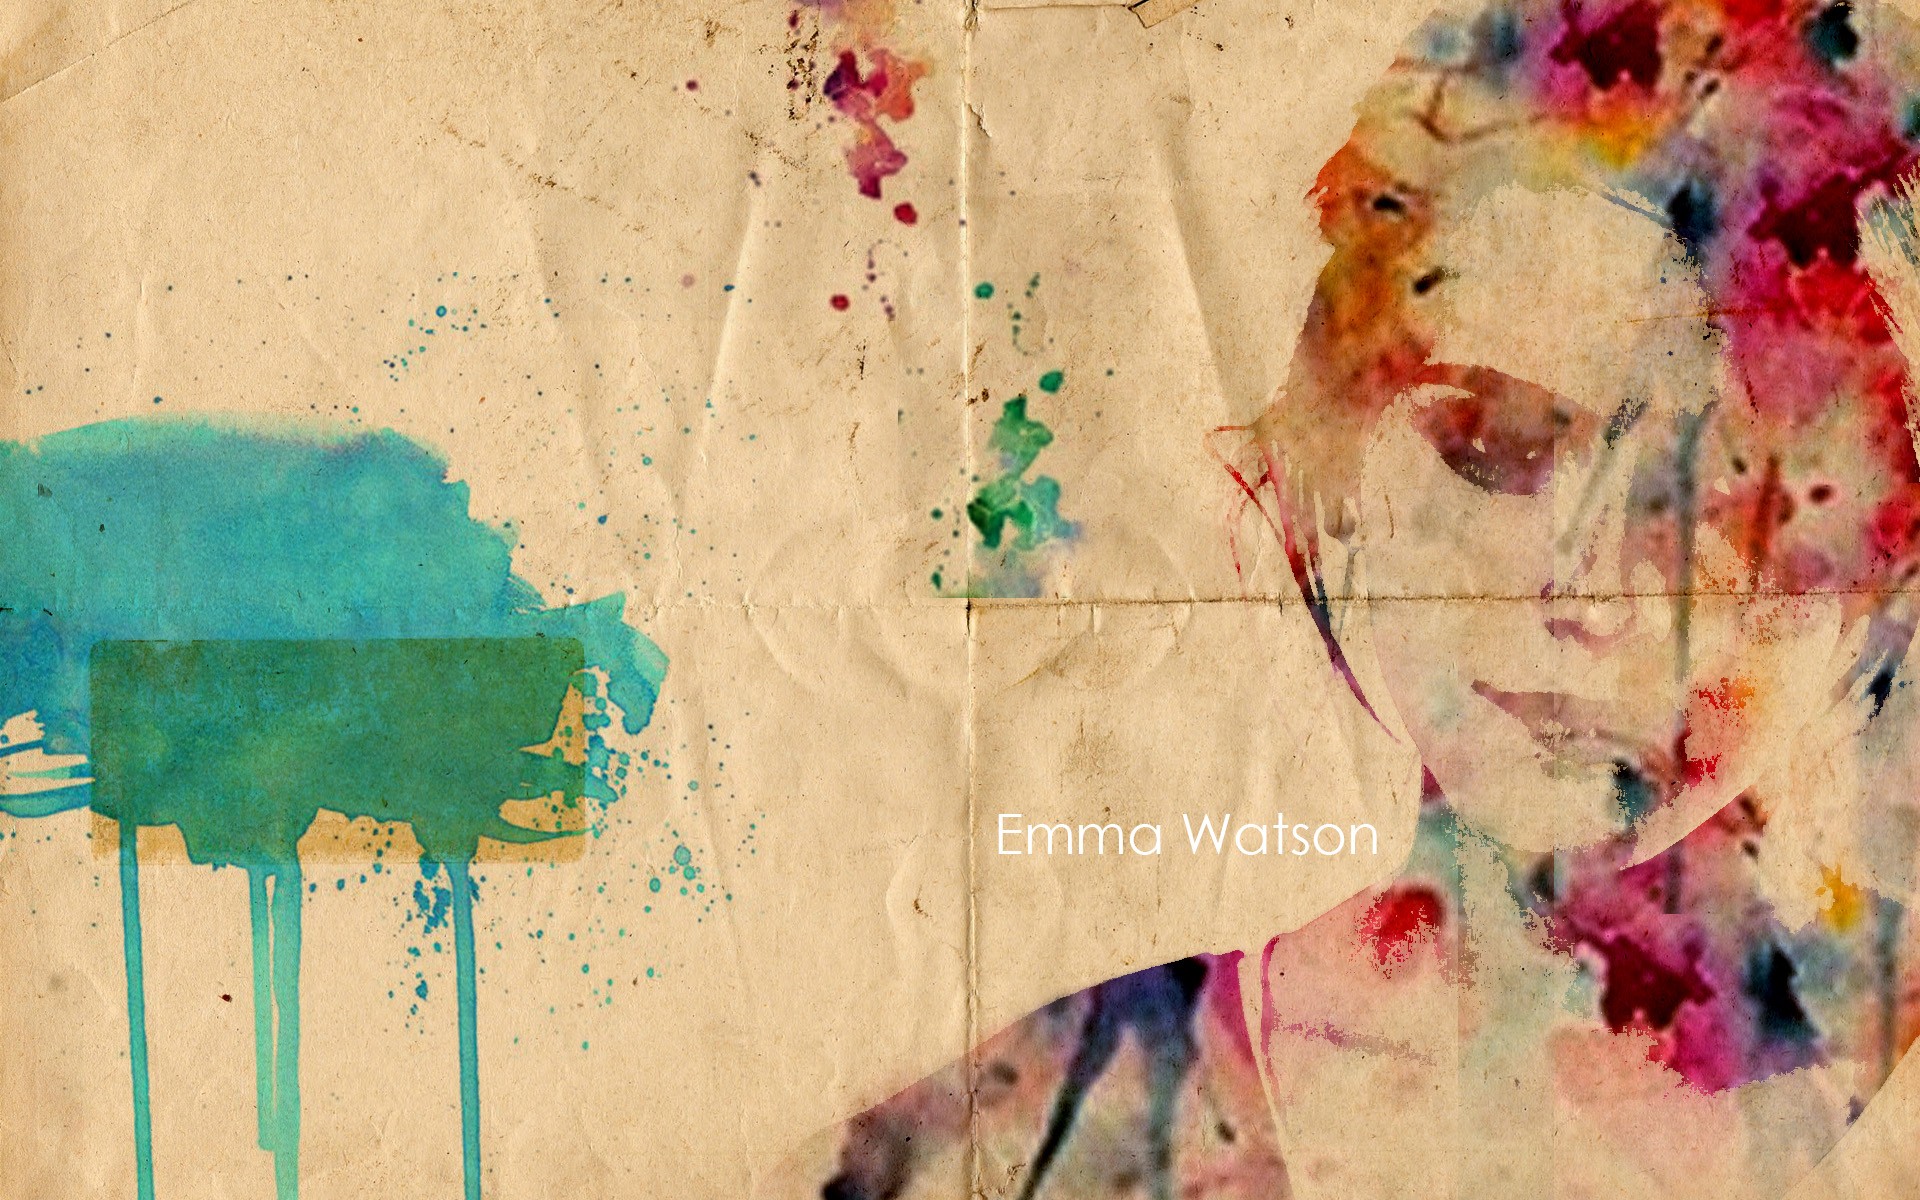 General 1920x1200 Emma Watson abstract artwork women British women digital art text paint splatter